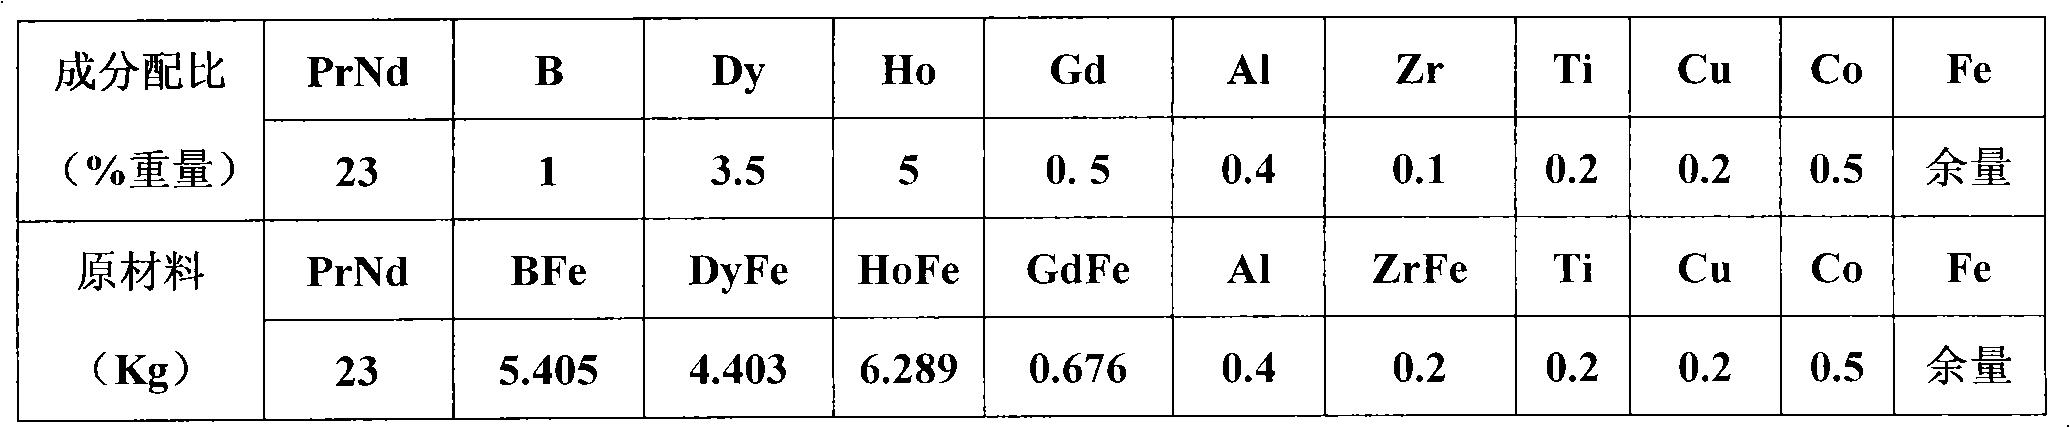 Medium-to-high grade neodymium-iron-boron magnet with composite addition of gadolinium and holmium